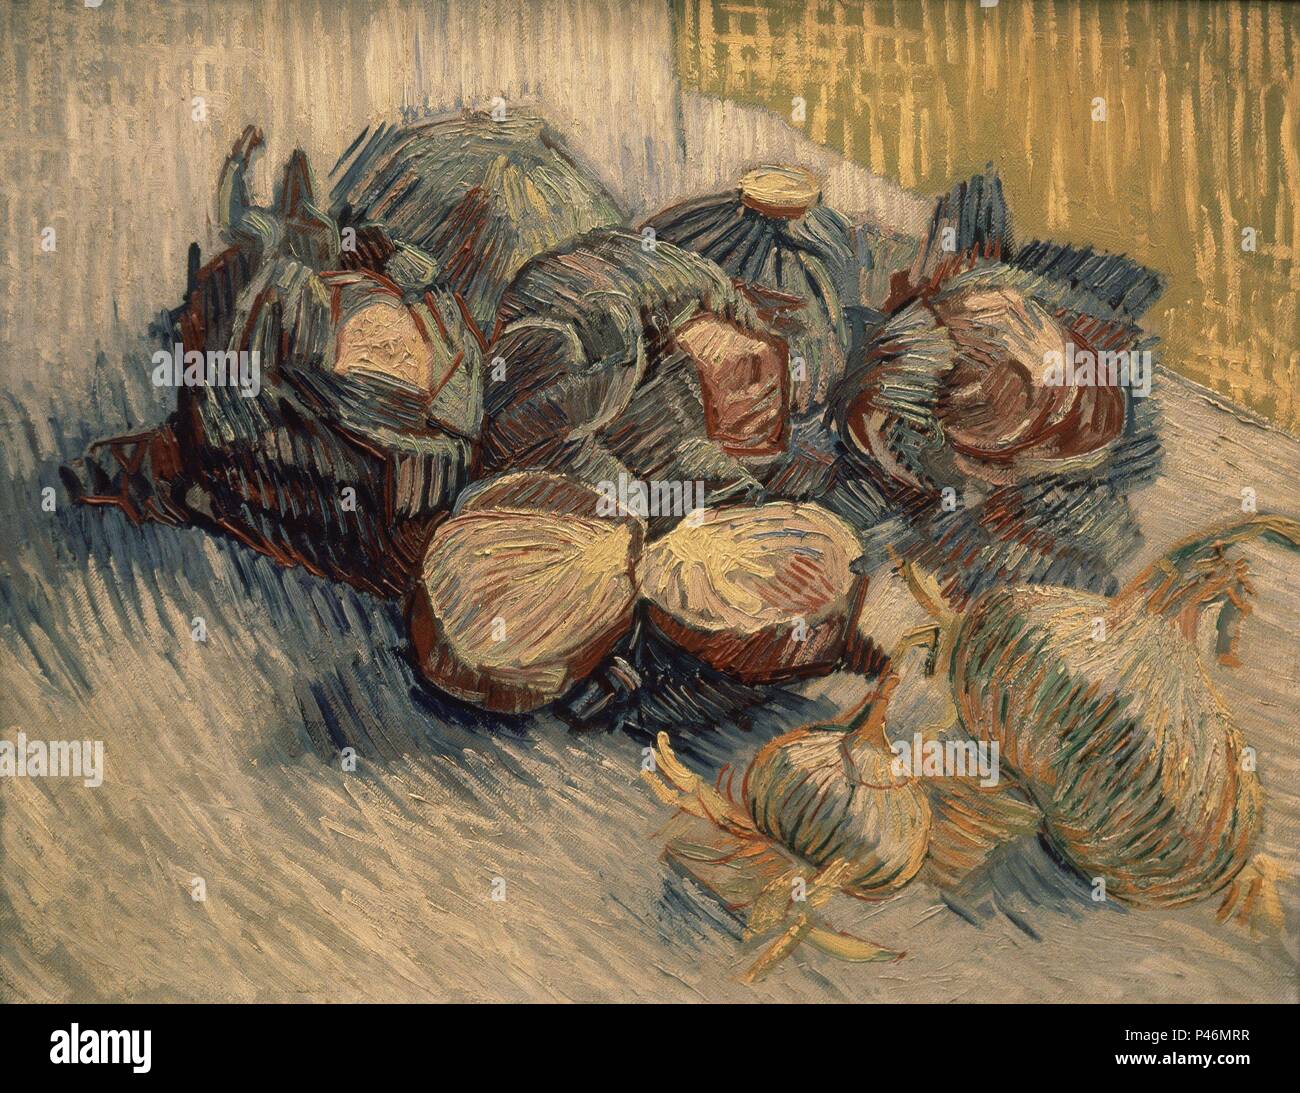 Scuola olandese. Natura morta con cavoli rossi e cipolle. 1887. Olio su tela - 50 x 64,5 cm). Amsterdam, il museo di Van Gogh. Autore: Vincent van Gogh (1853-1890). Posizione: MUSEO VAN GOGH, Amsterdam, Olanda. Foto Stock